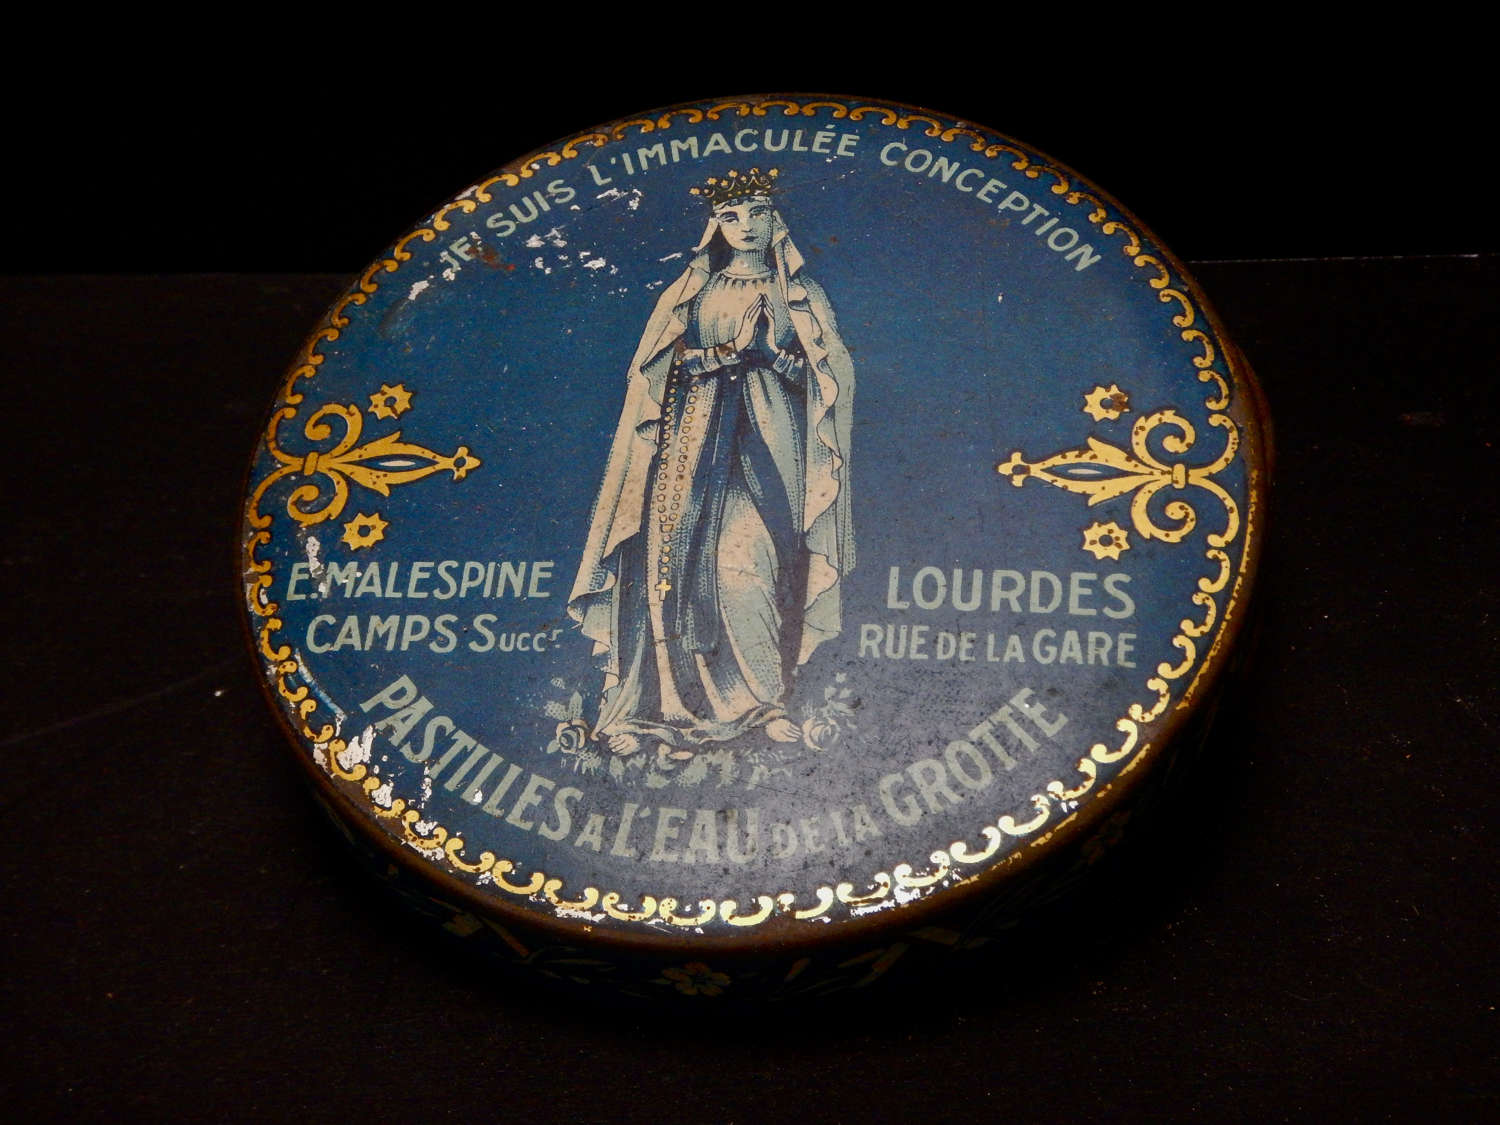 Antique Lourdes Pastilles a L'Eau de la Grotte - Collectable Tin